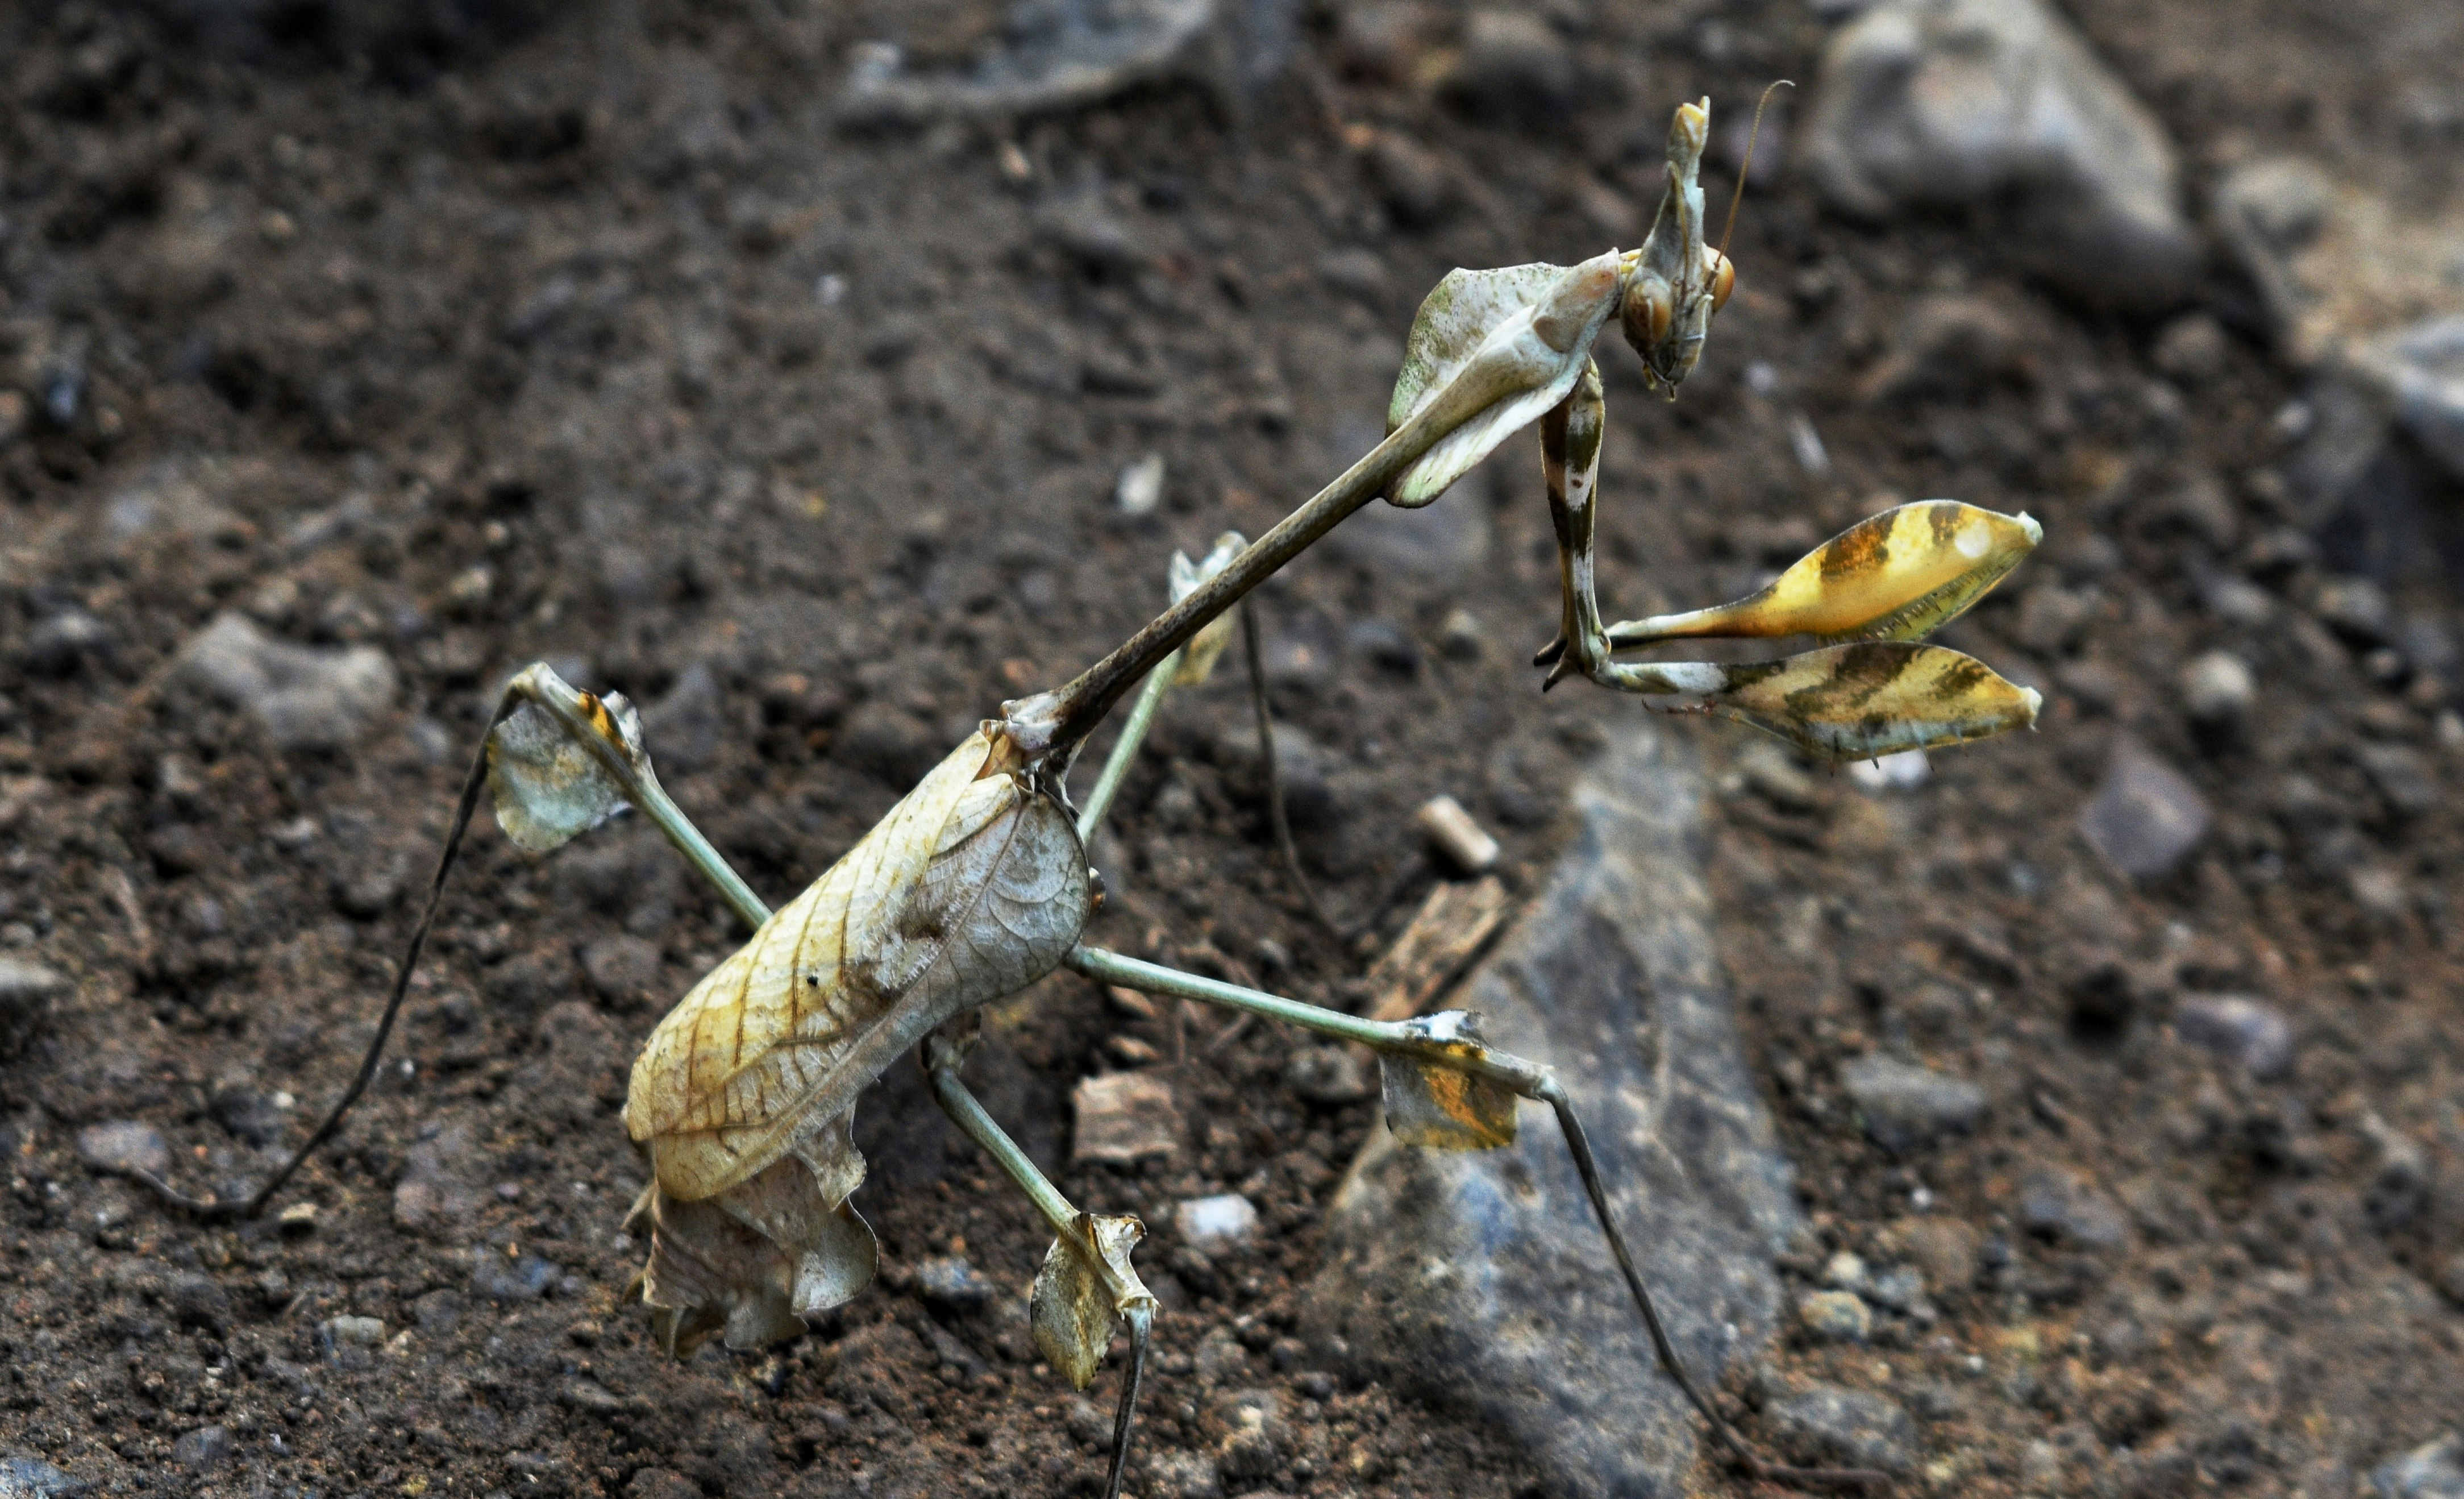 brown praying mantis on brown soil in close up photography during daytime